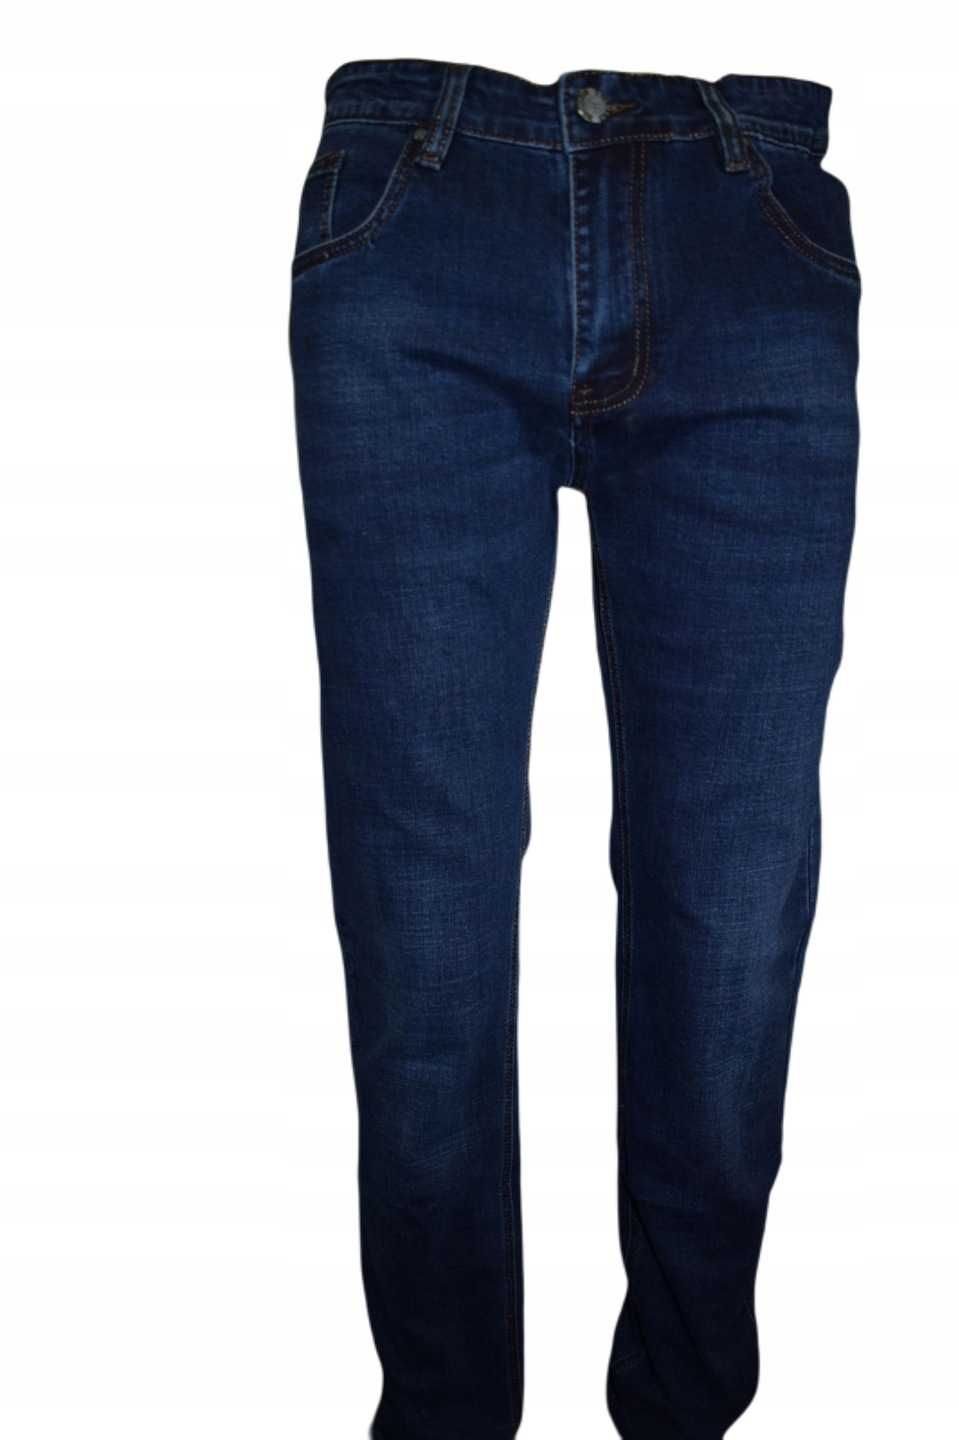 Spodnie jeansowe BIGMAN r. 39 nr 624